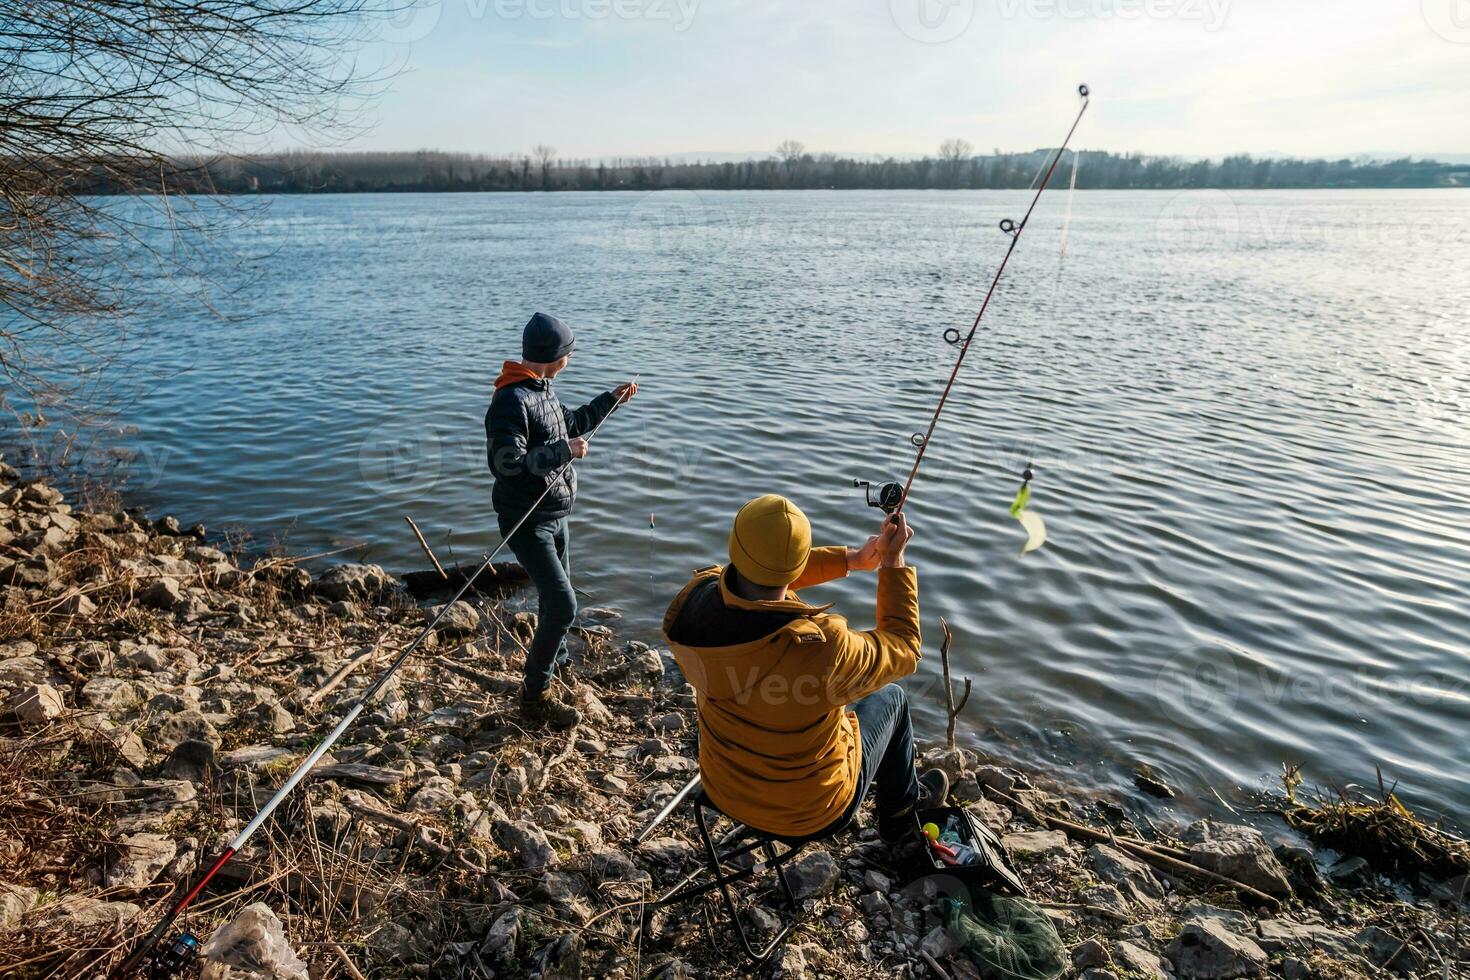 far och son är fiske på solig vinter- dag foto